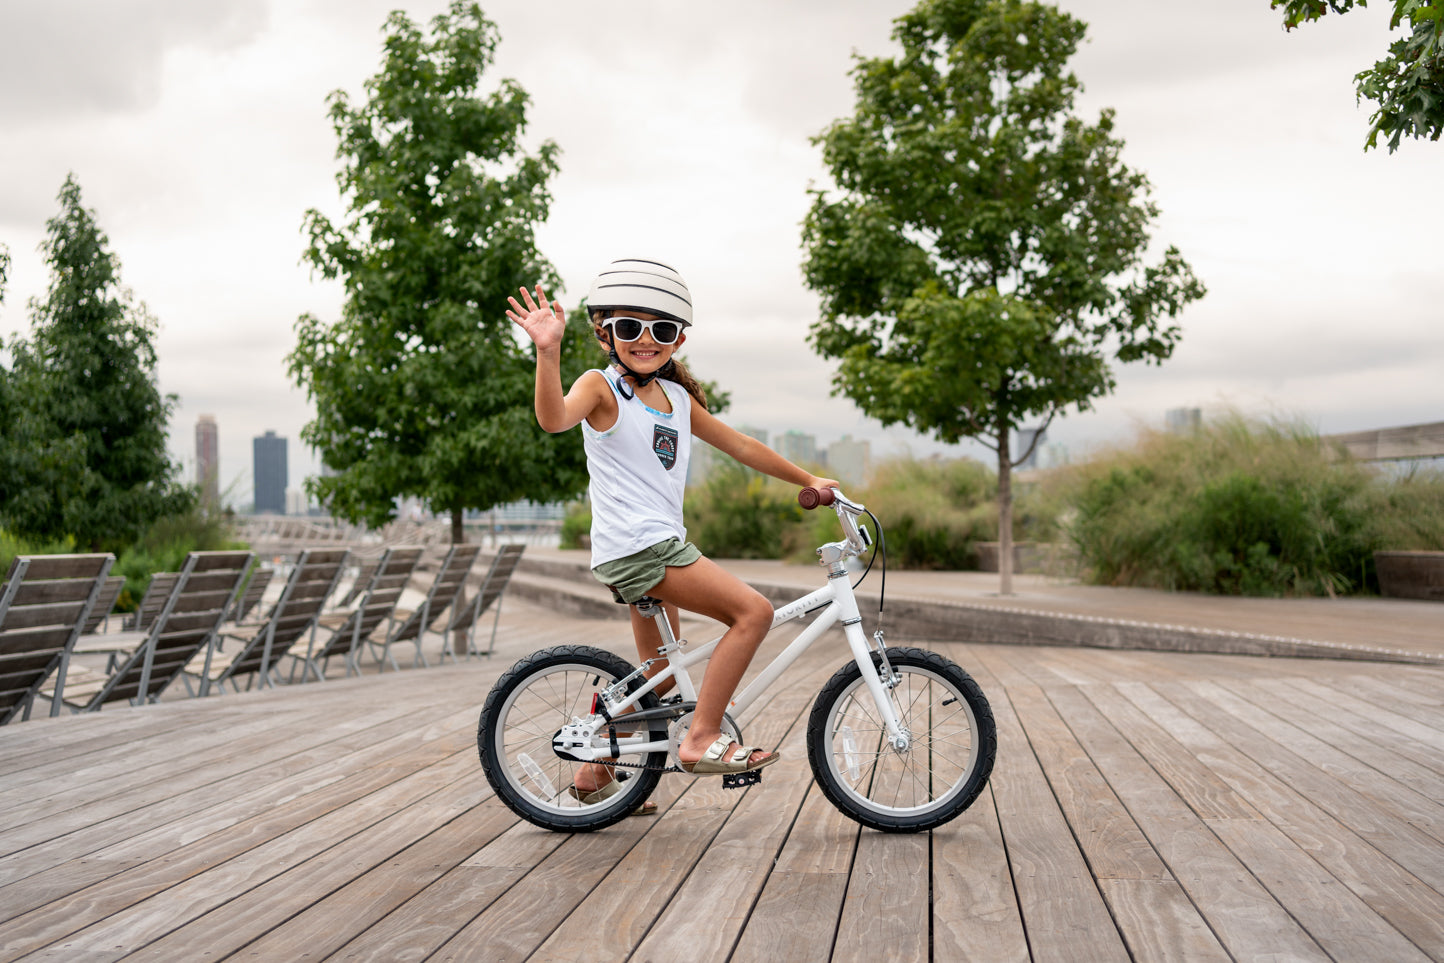 Children Safety Belt One-piece Bike Safety Seat Holder Drop Protection